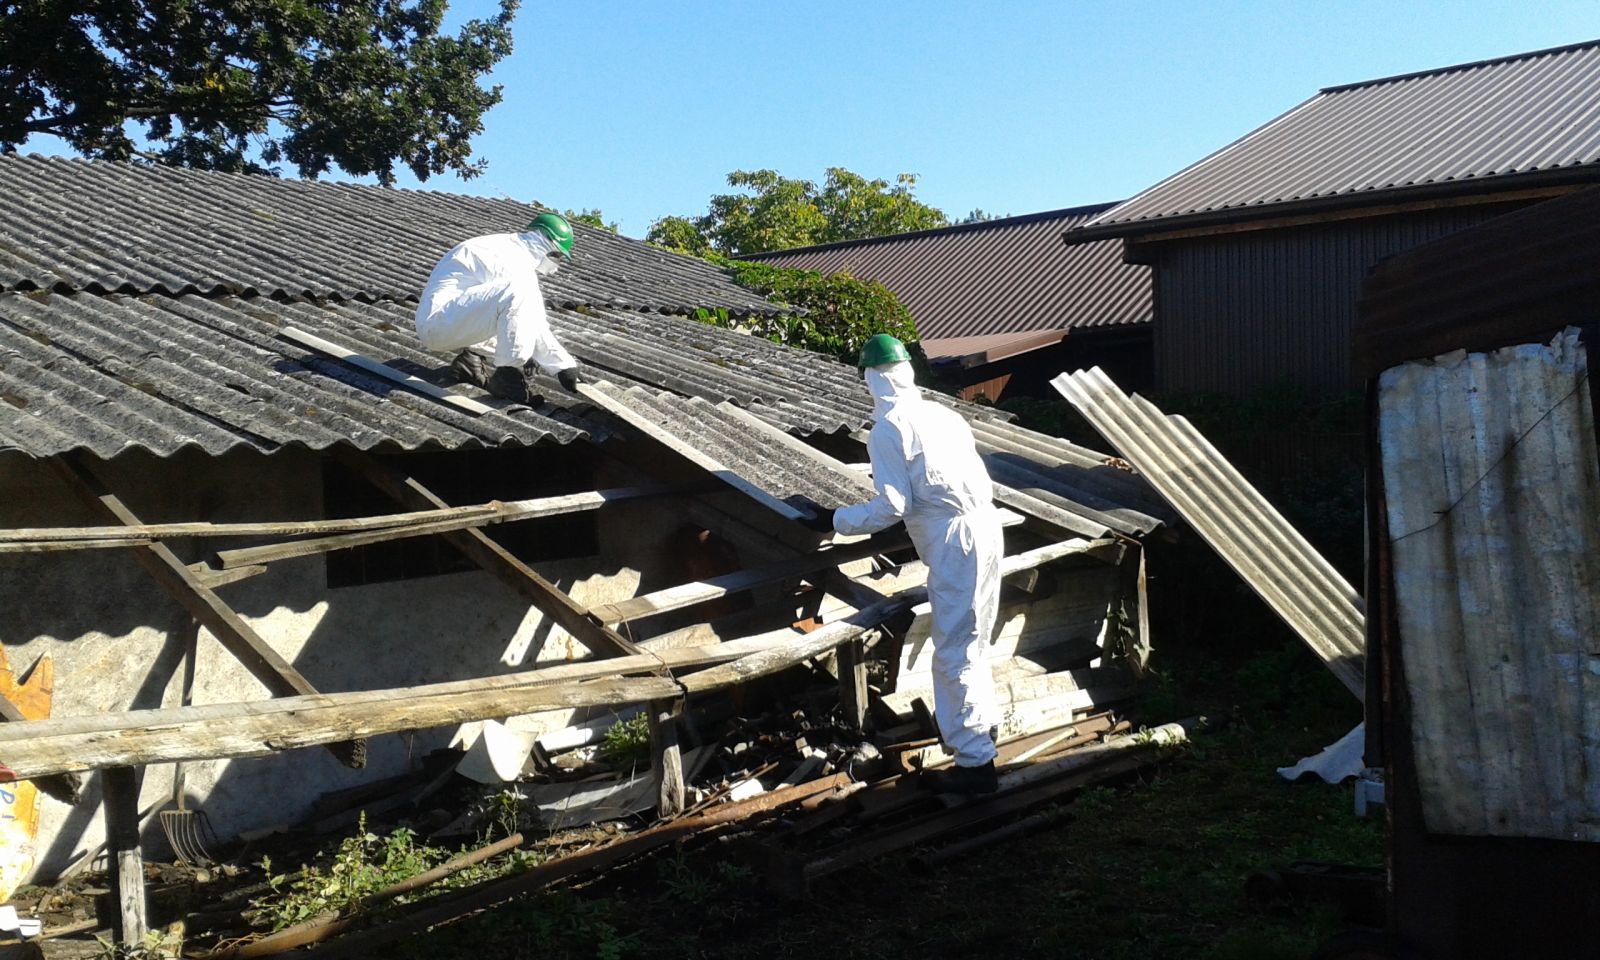 Powiększ zdjęcie. Dwie osoby w białych kominezonach ściągają płyty azbestowe ze starego dachu. 